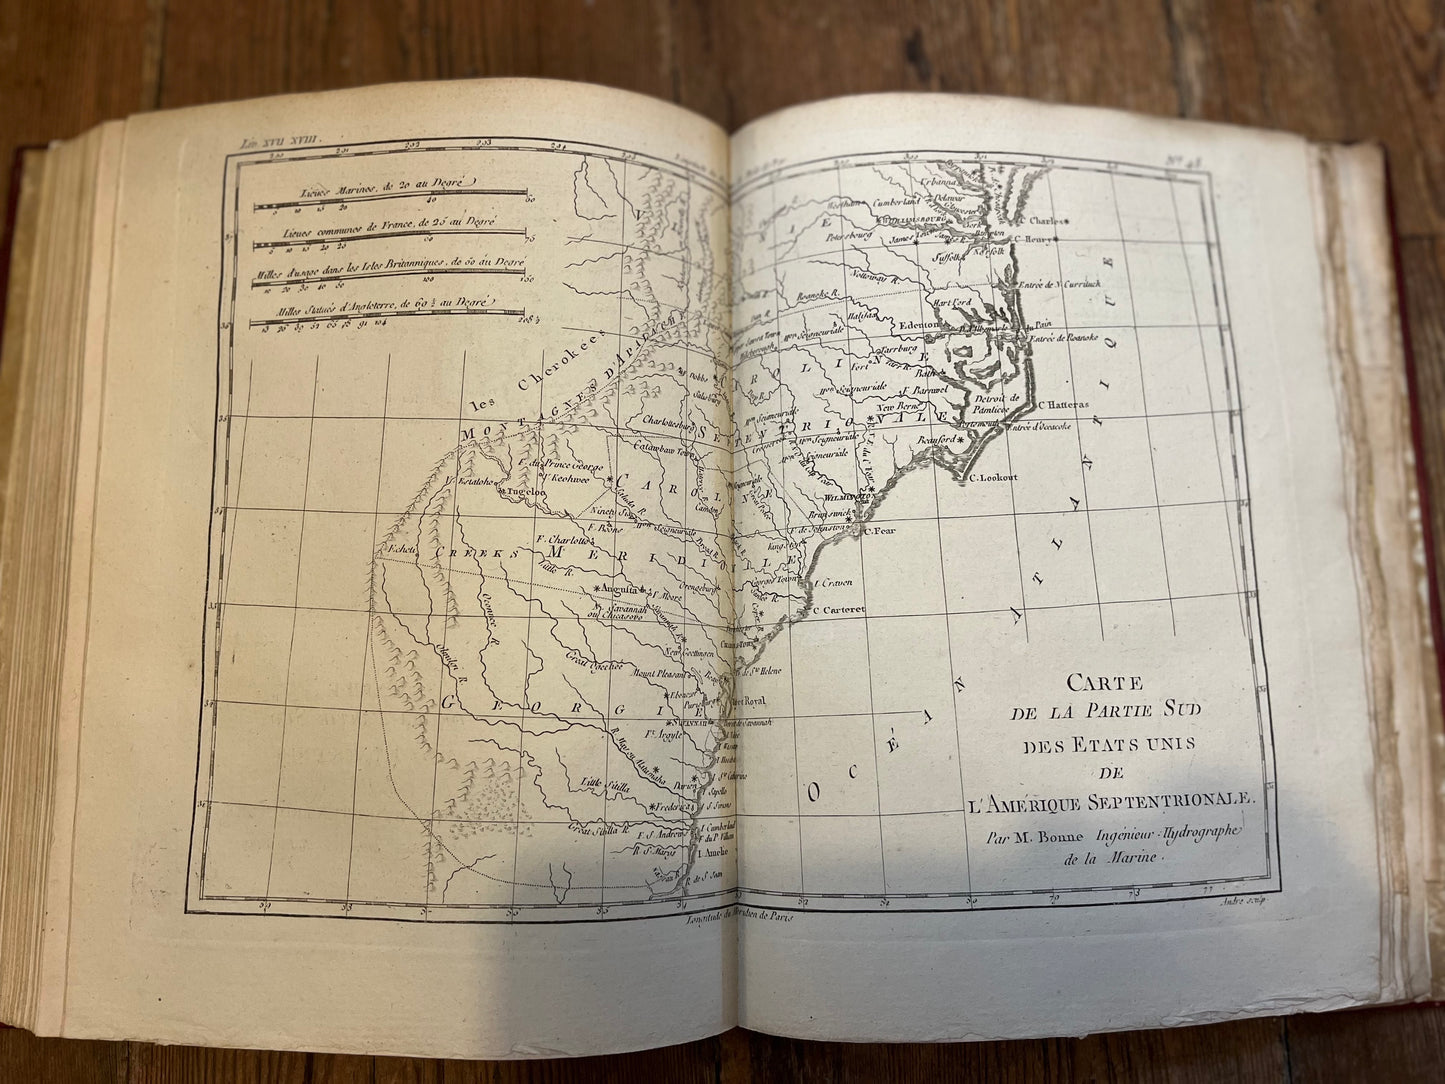 Atlas De Toutes Les Parties Connues Du Globe Terrestre - Bonne, Rigobert - Raynal, Guillaume